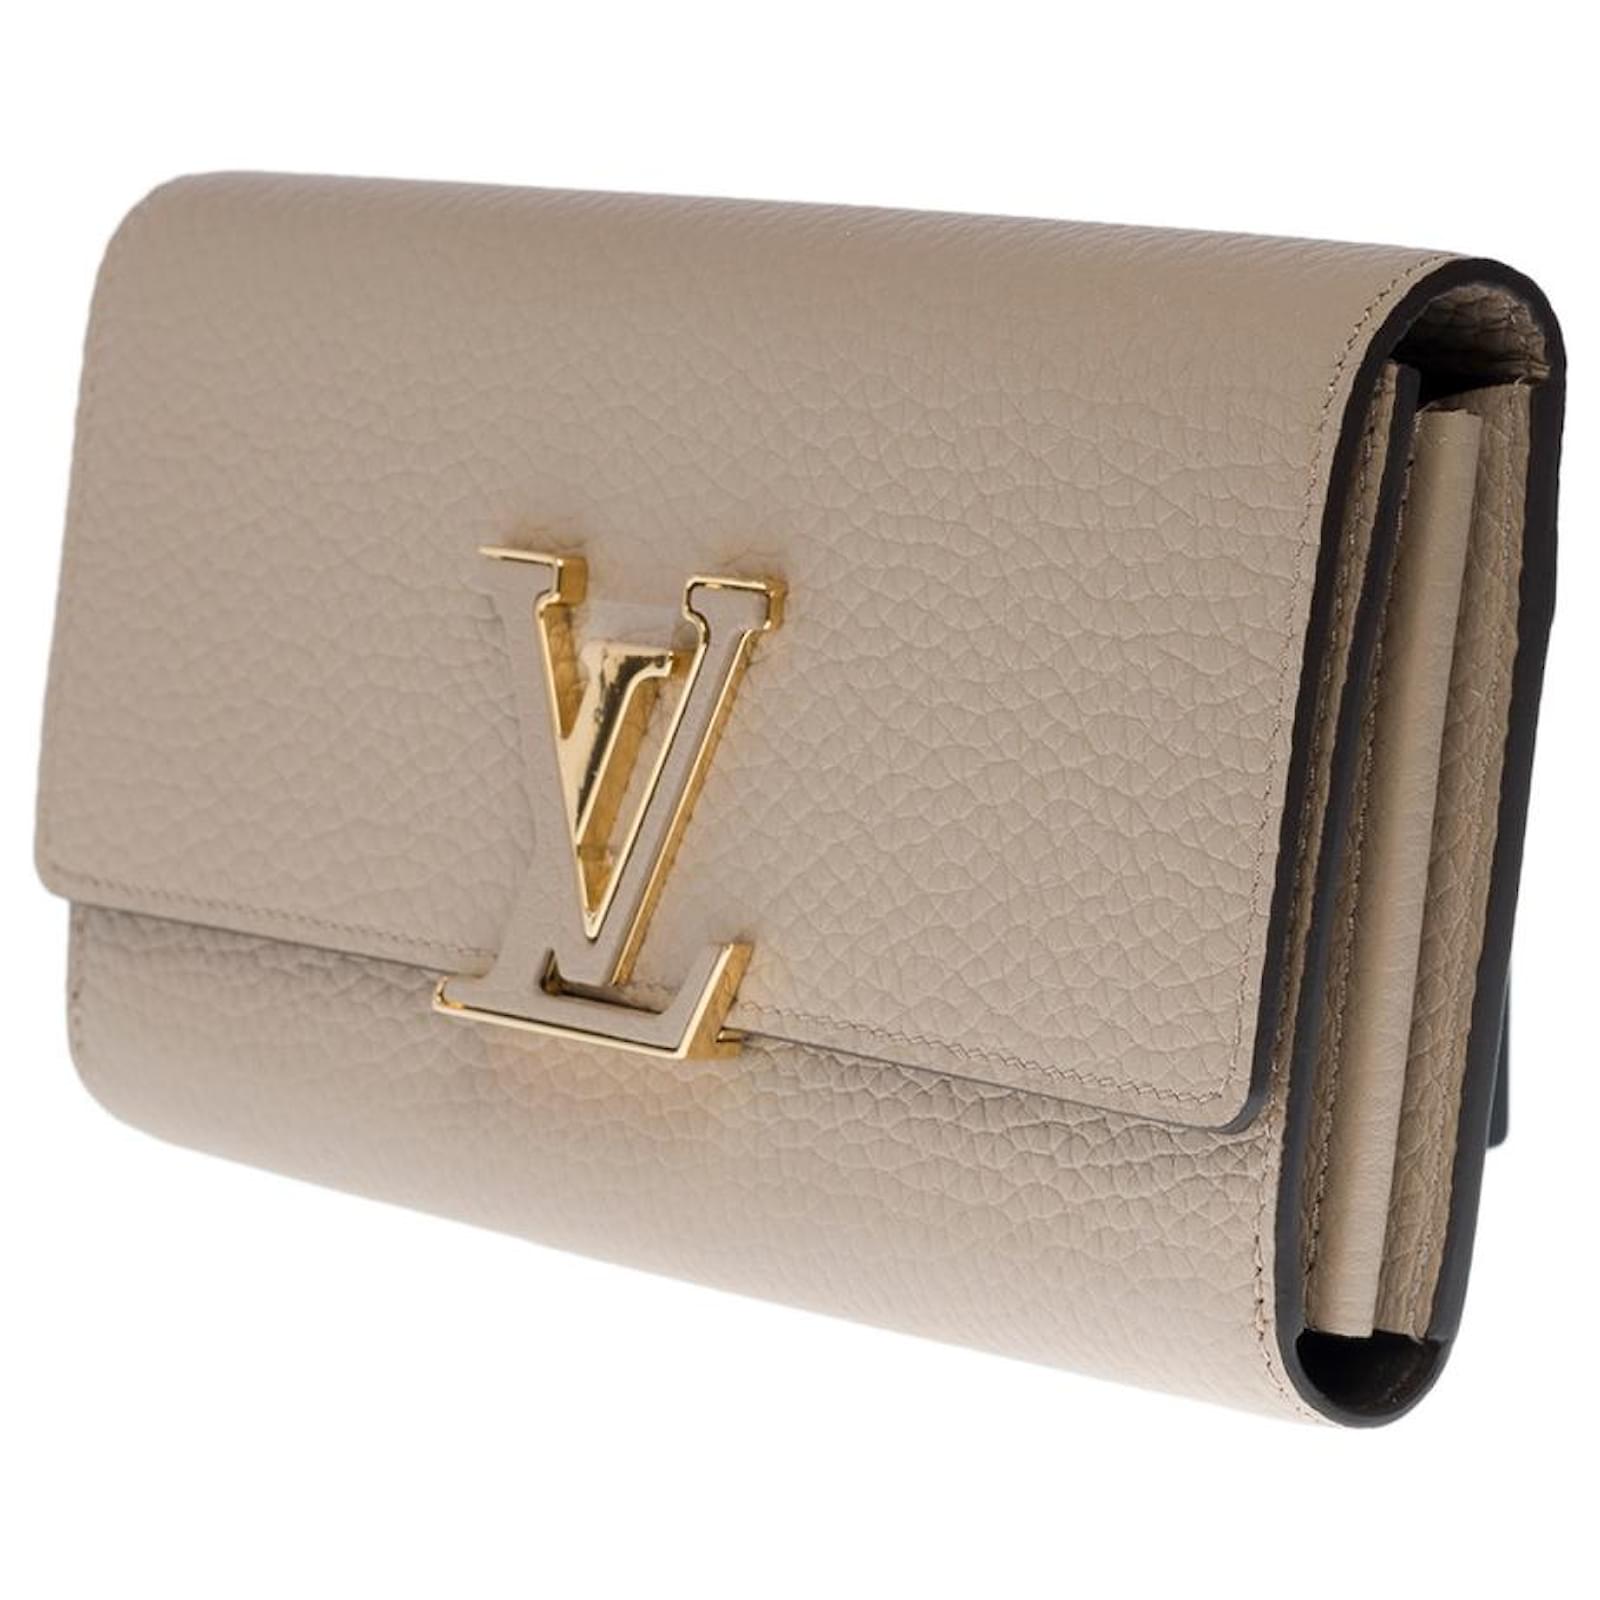 Louis Vuitton Capucines Wallet in Galet for Women